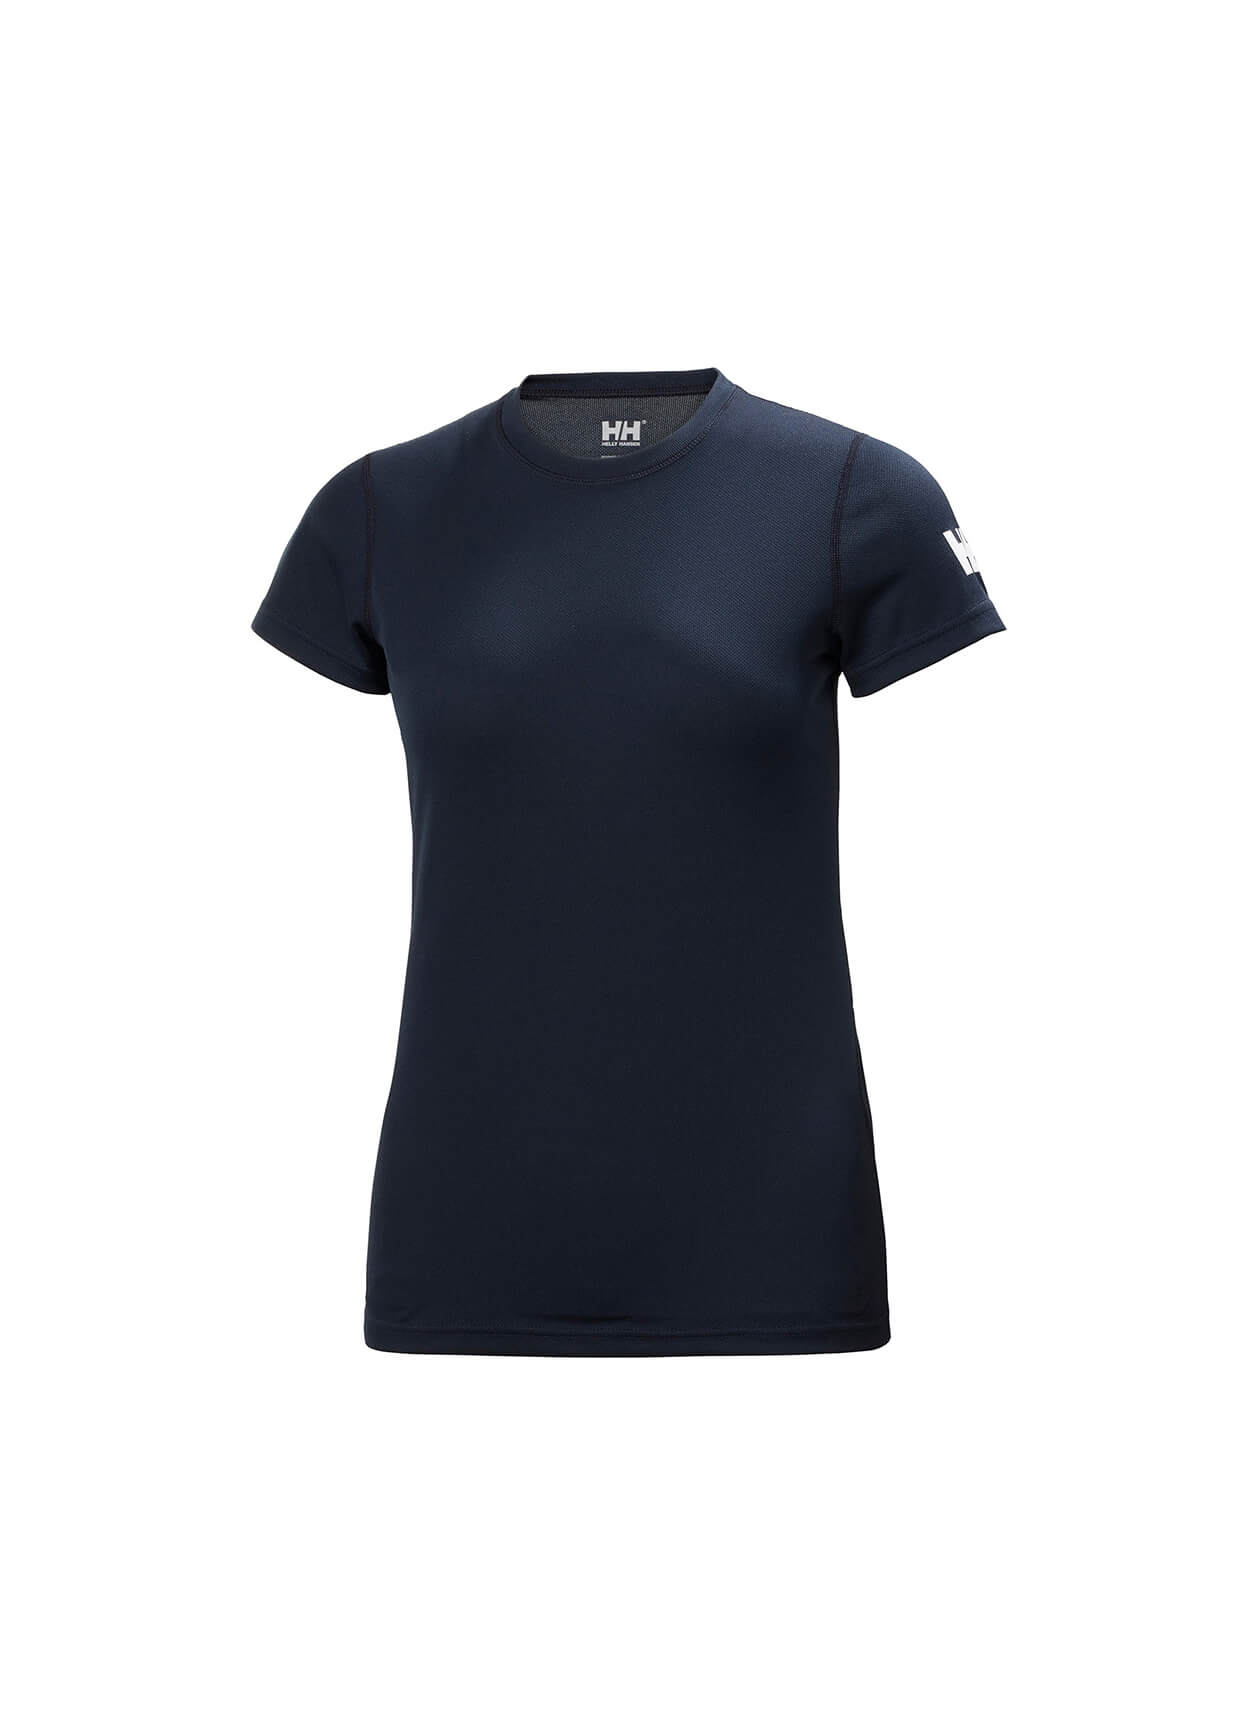 Helly Hansen 48373 - Women's Tech T-Shirt